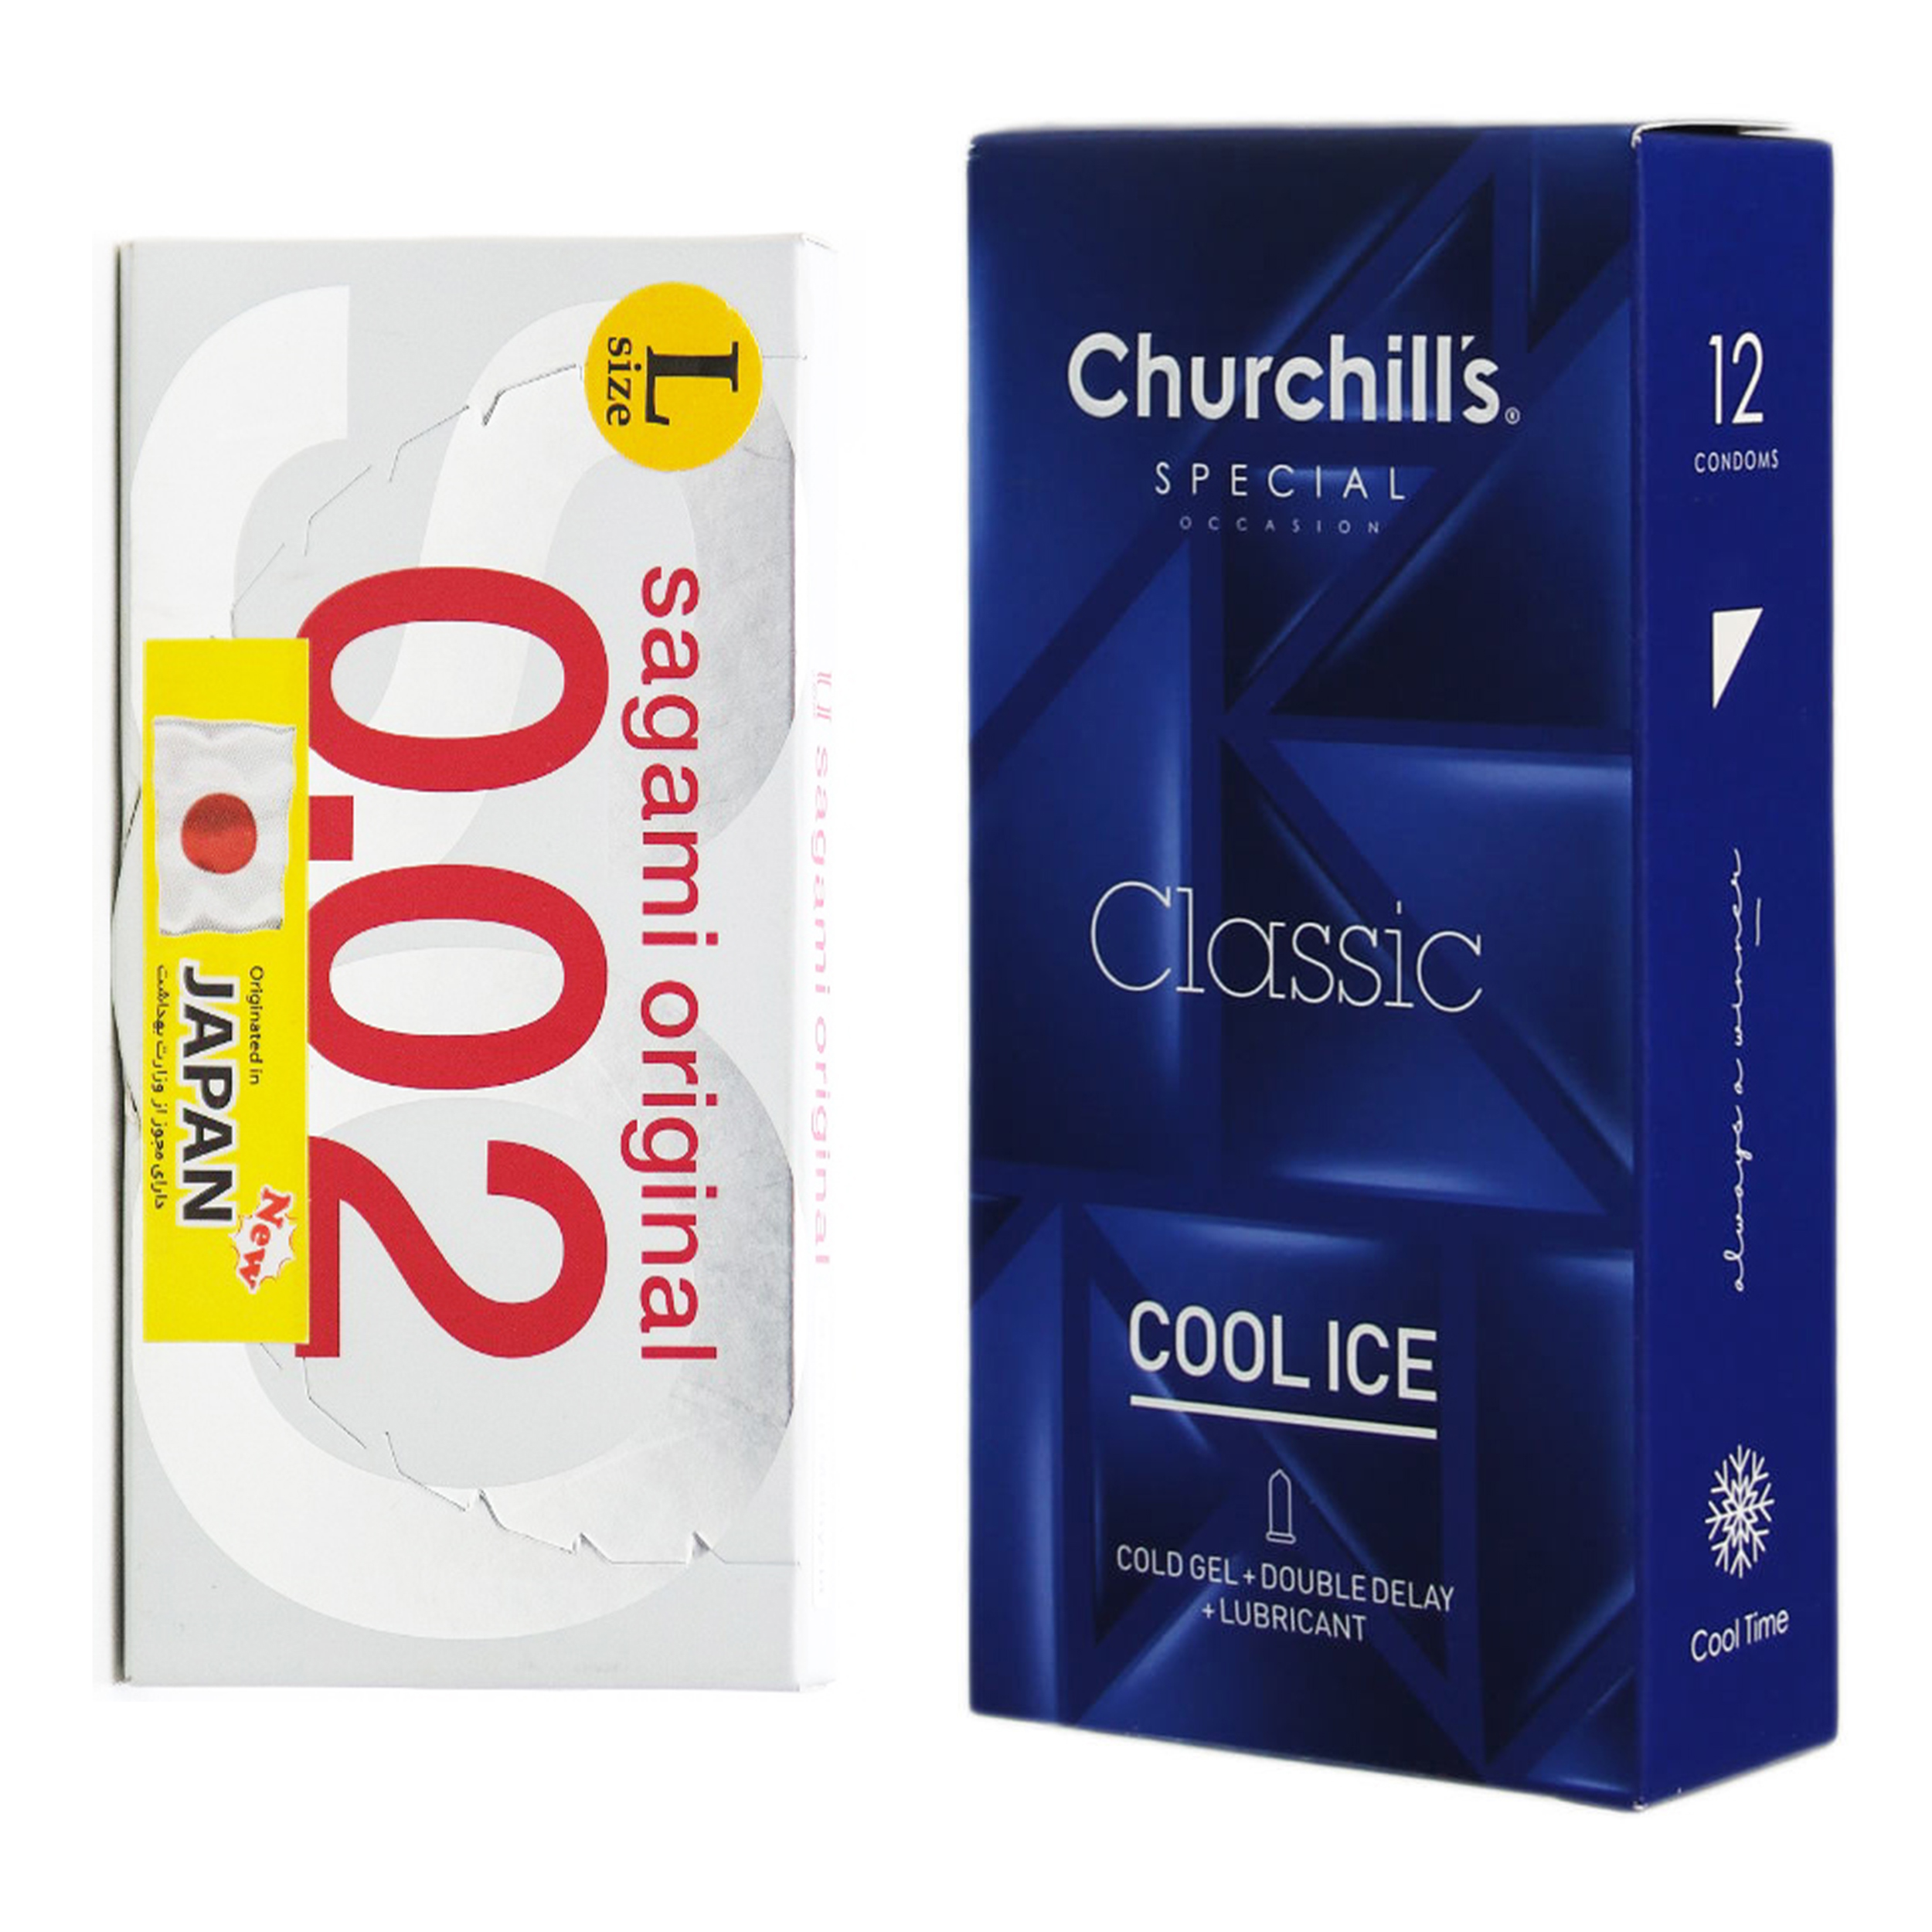 کاندوم چرچیلز مدل Cool Ice بسته 12 عددی به همراه کاندوم ساگامی کد 001 بسته 2 عددی